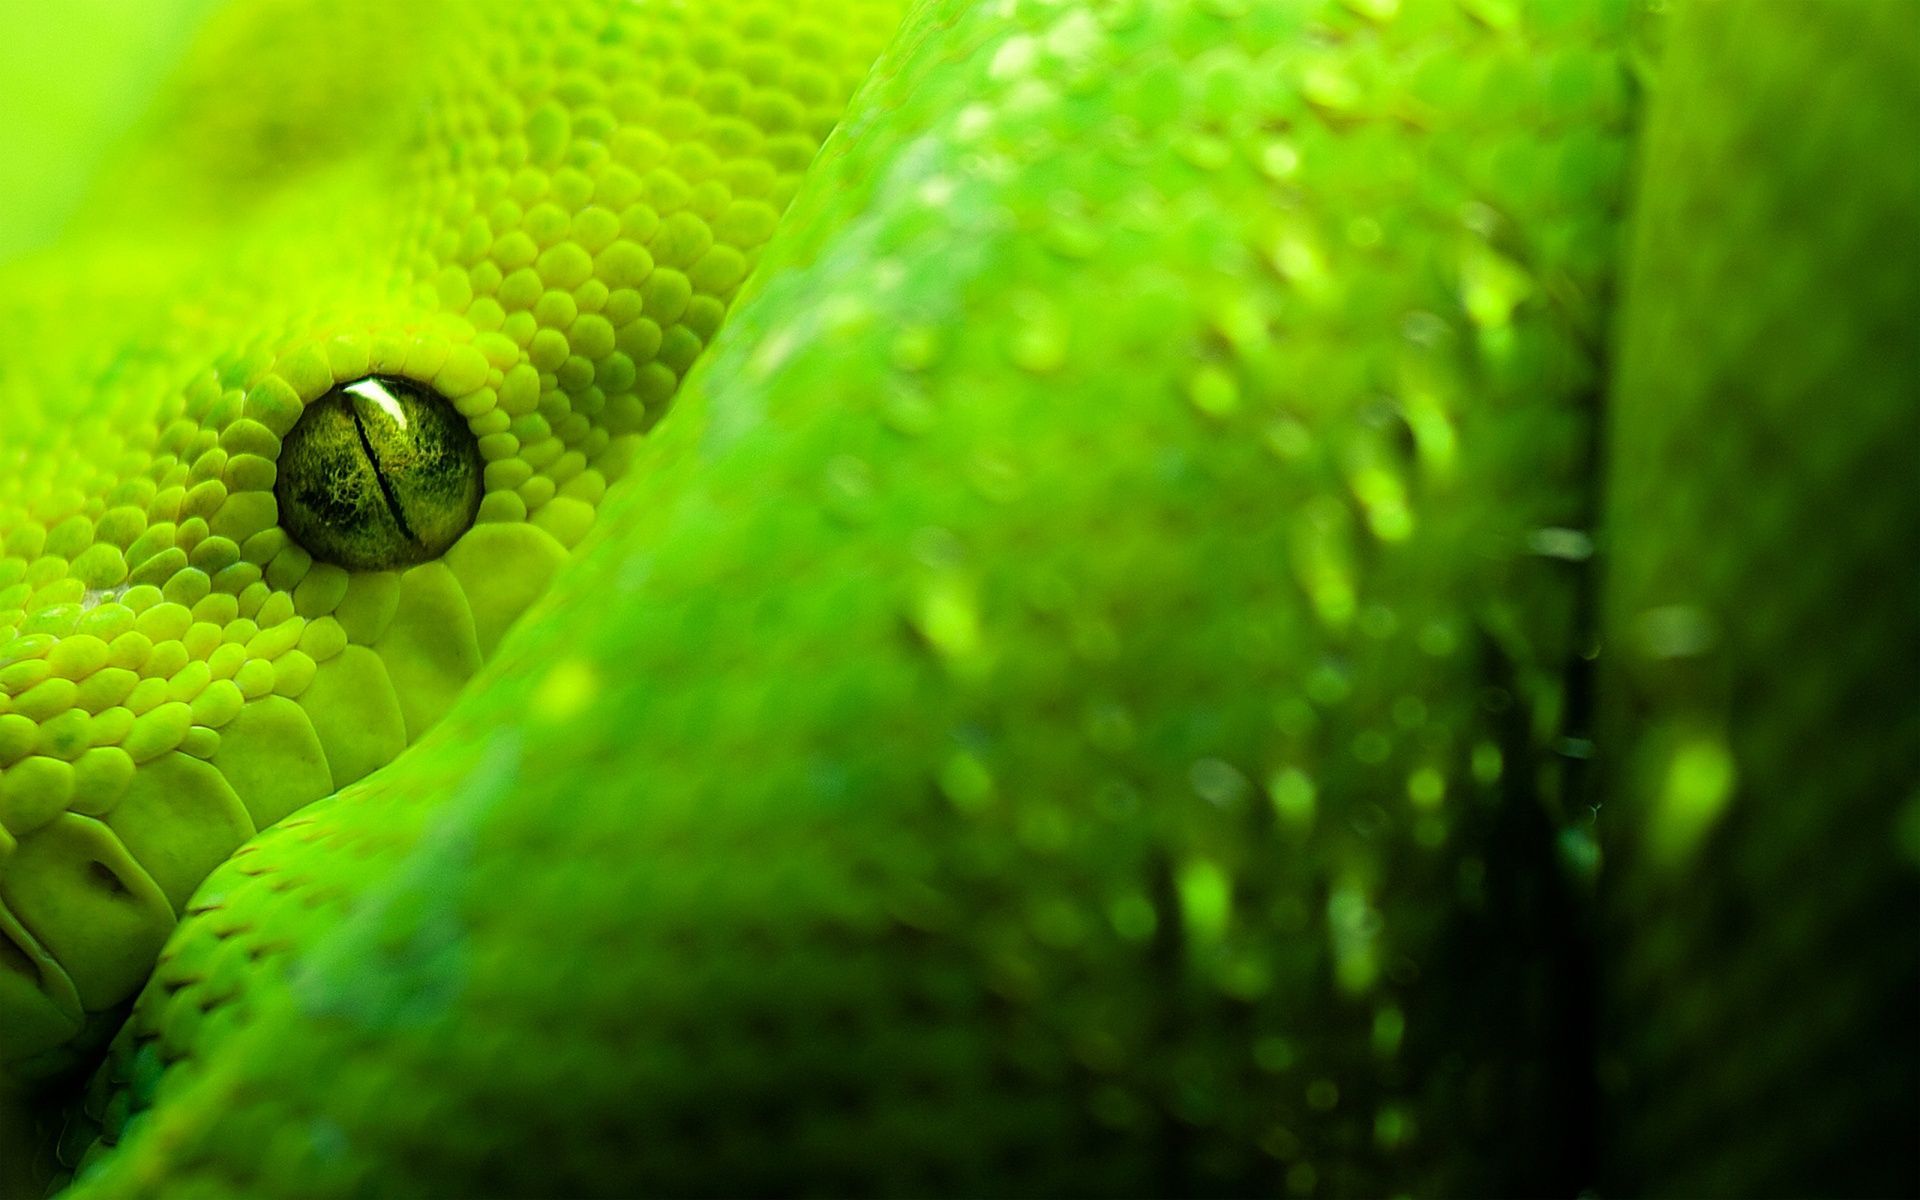 Green Snake Look 1920&;1200. Snake wallpaper, Animal wallpaper, Snake image